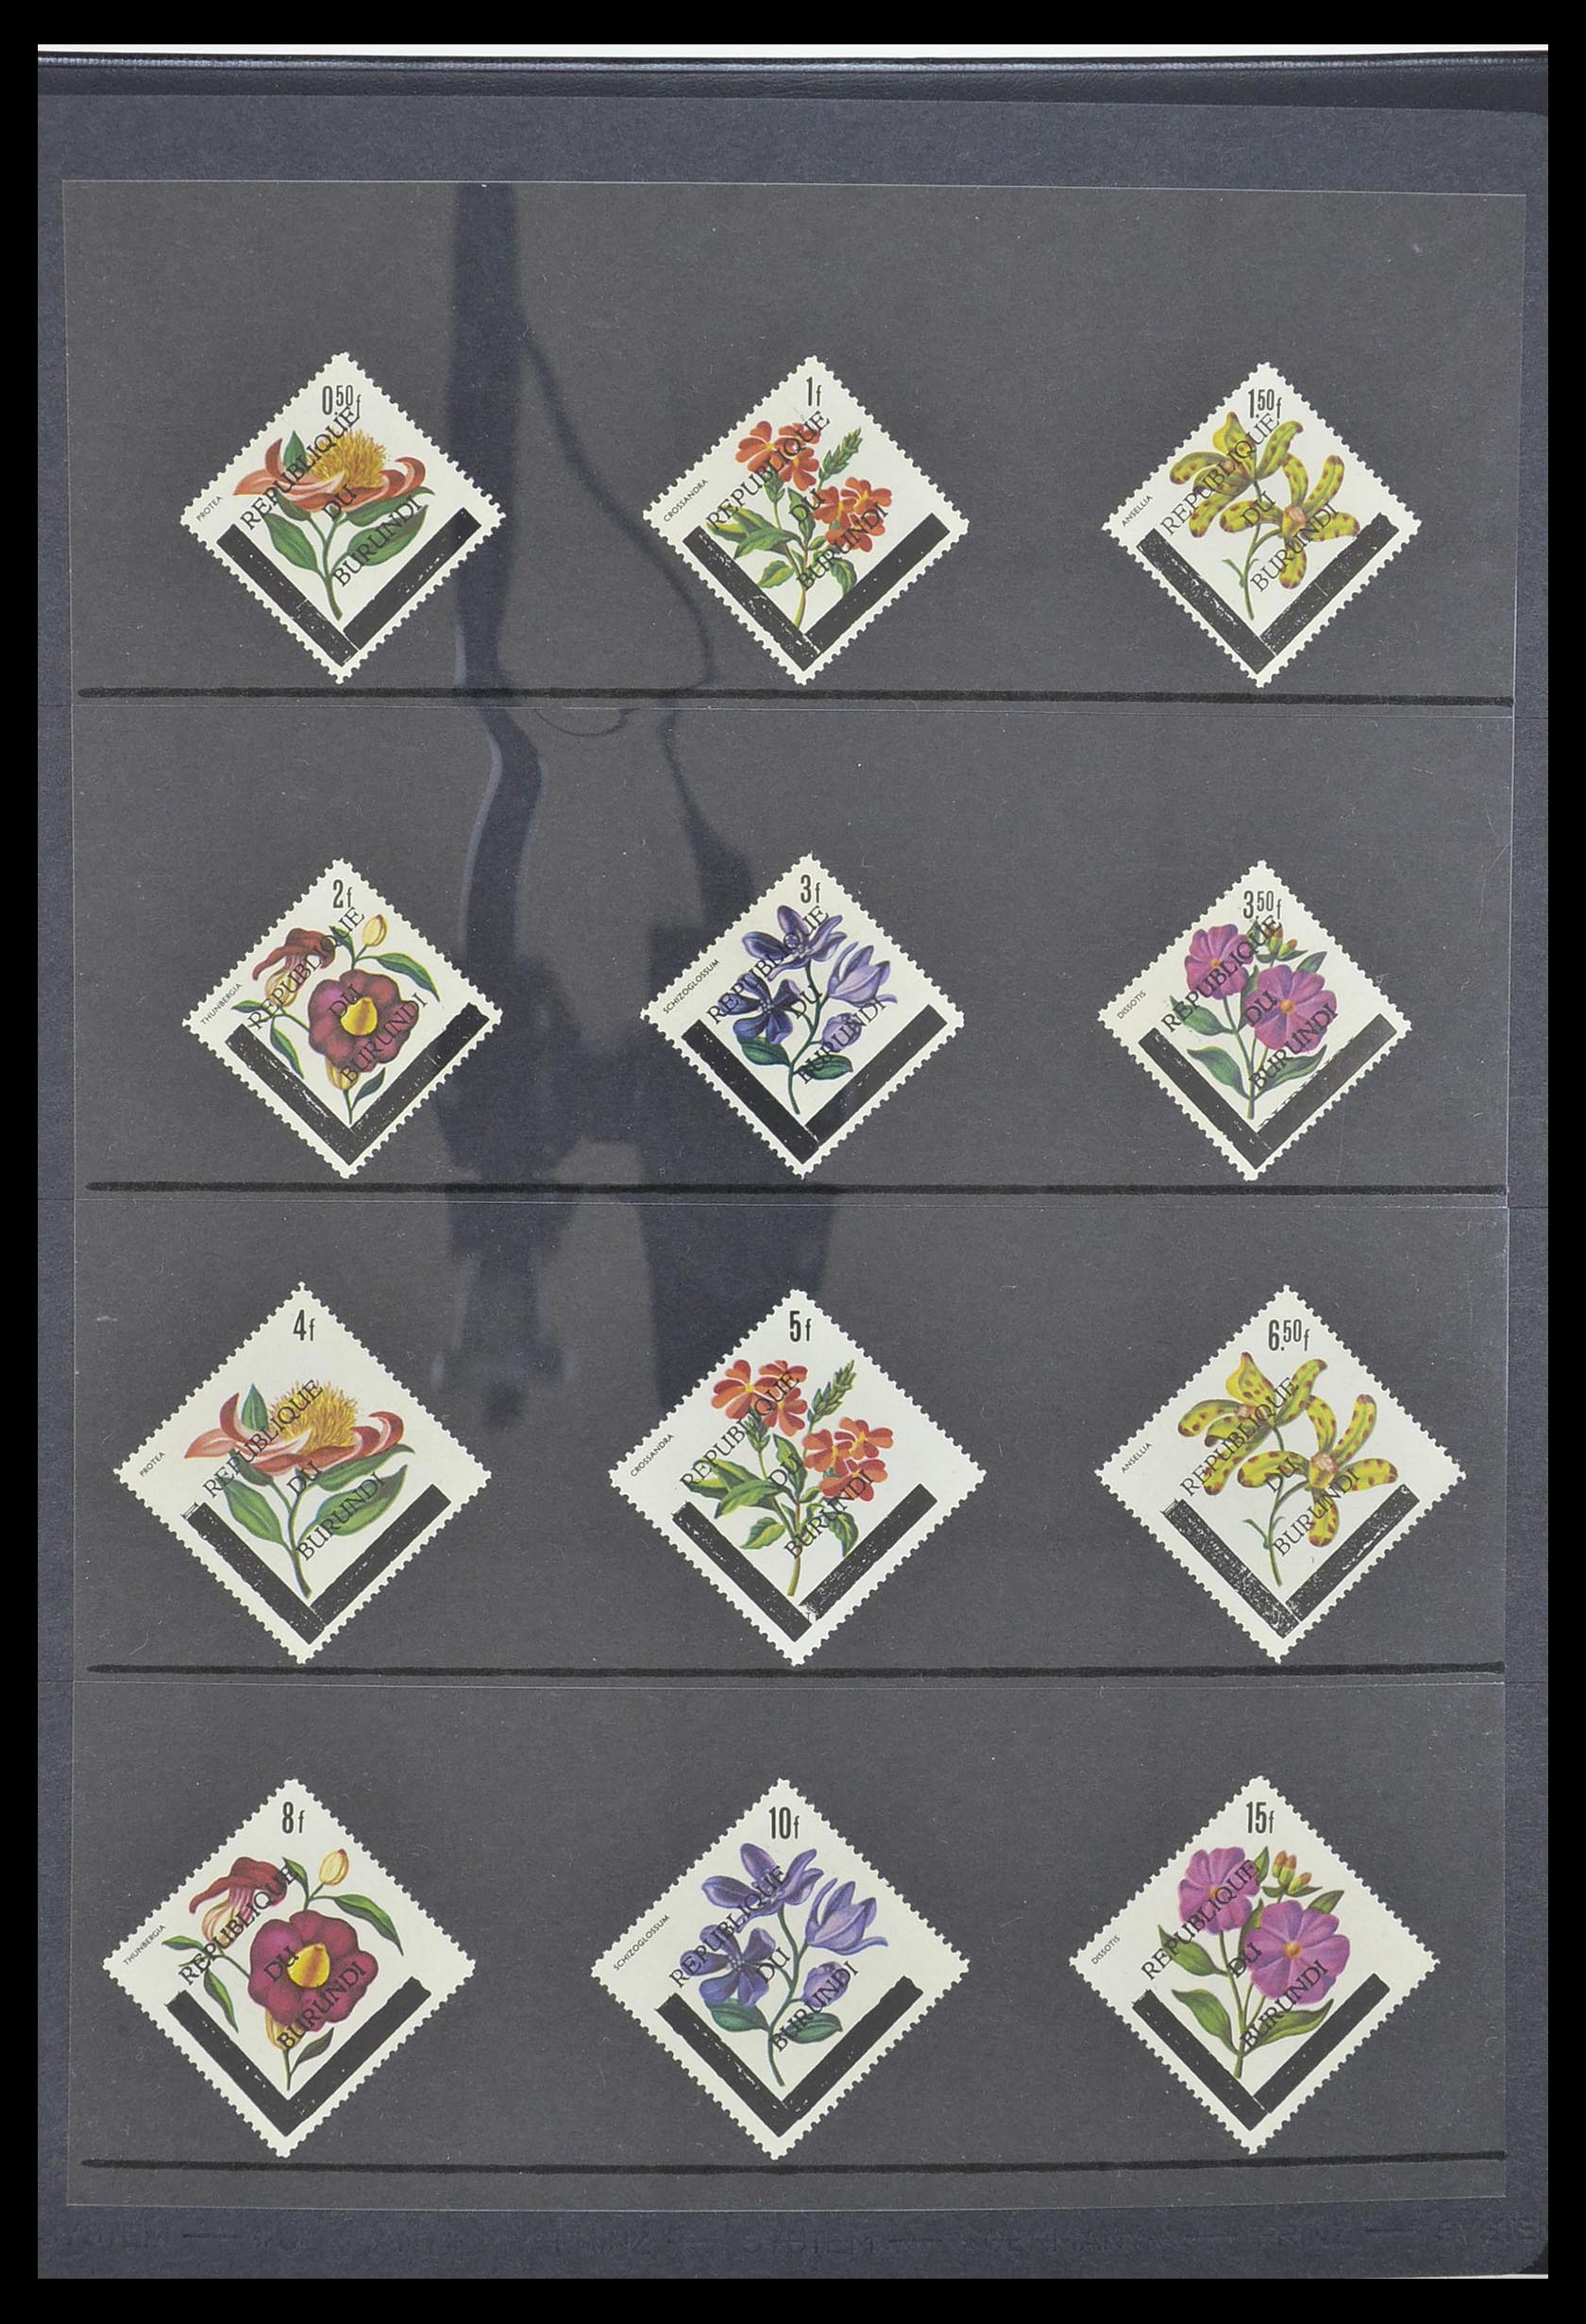 33764 072 - Stamp collection 33764 Burundi 1962-2004.